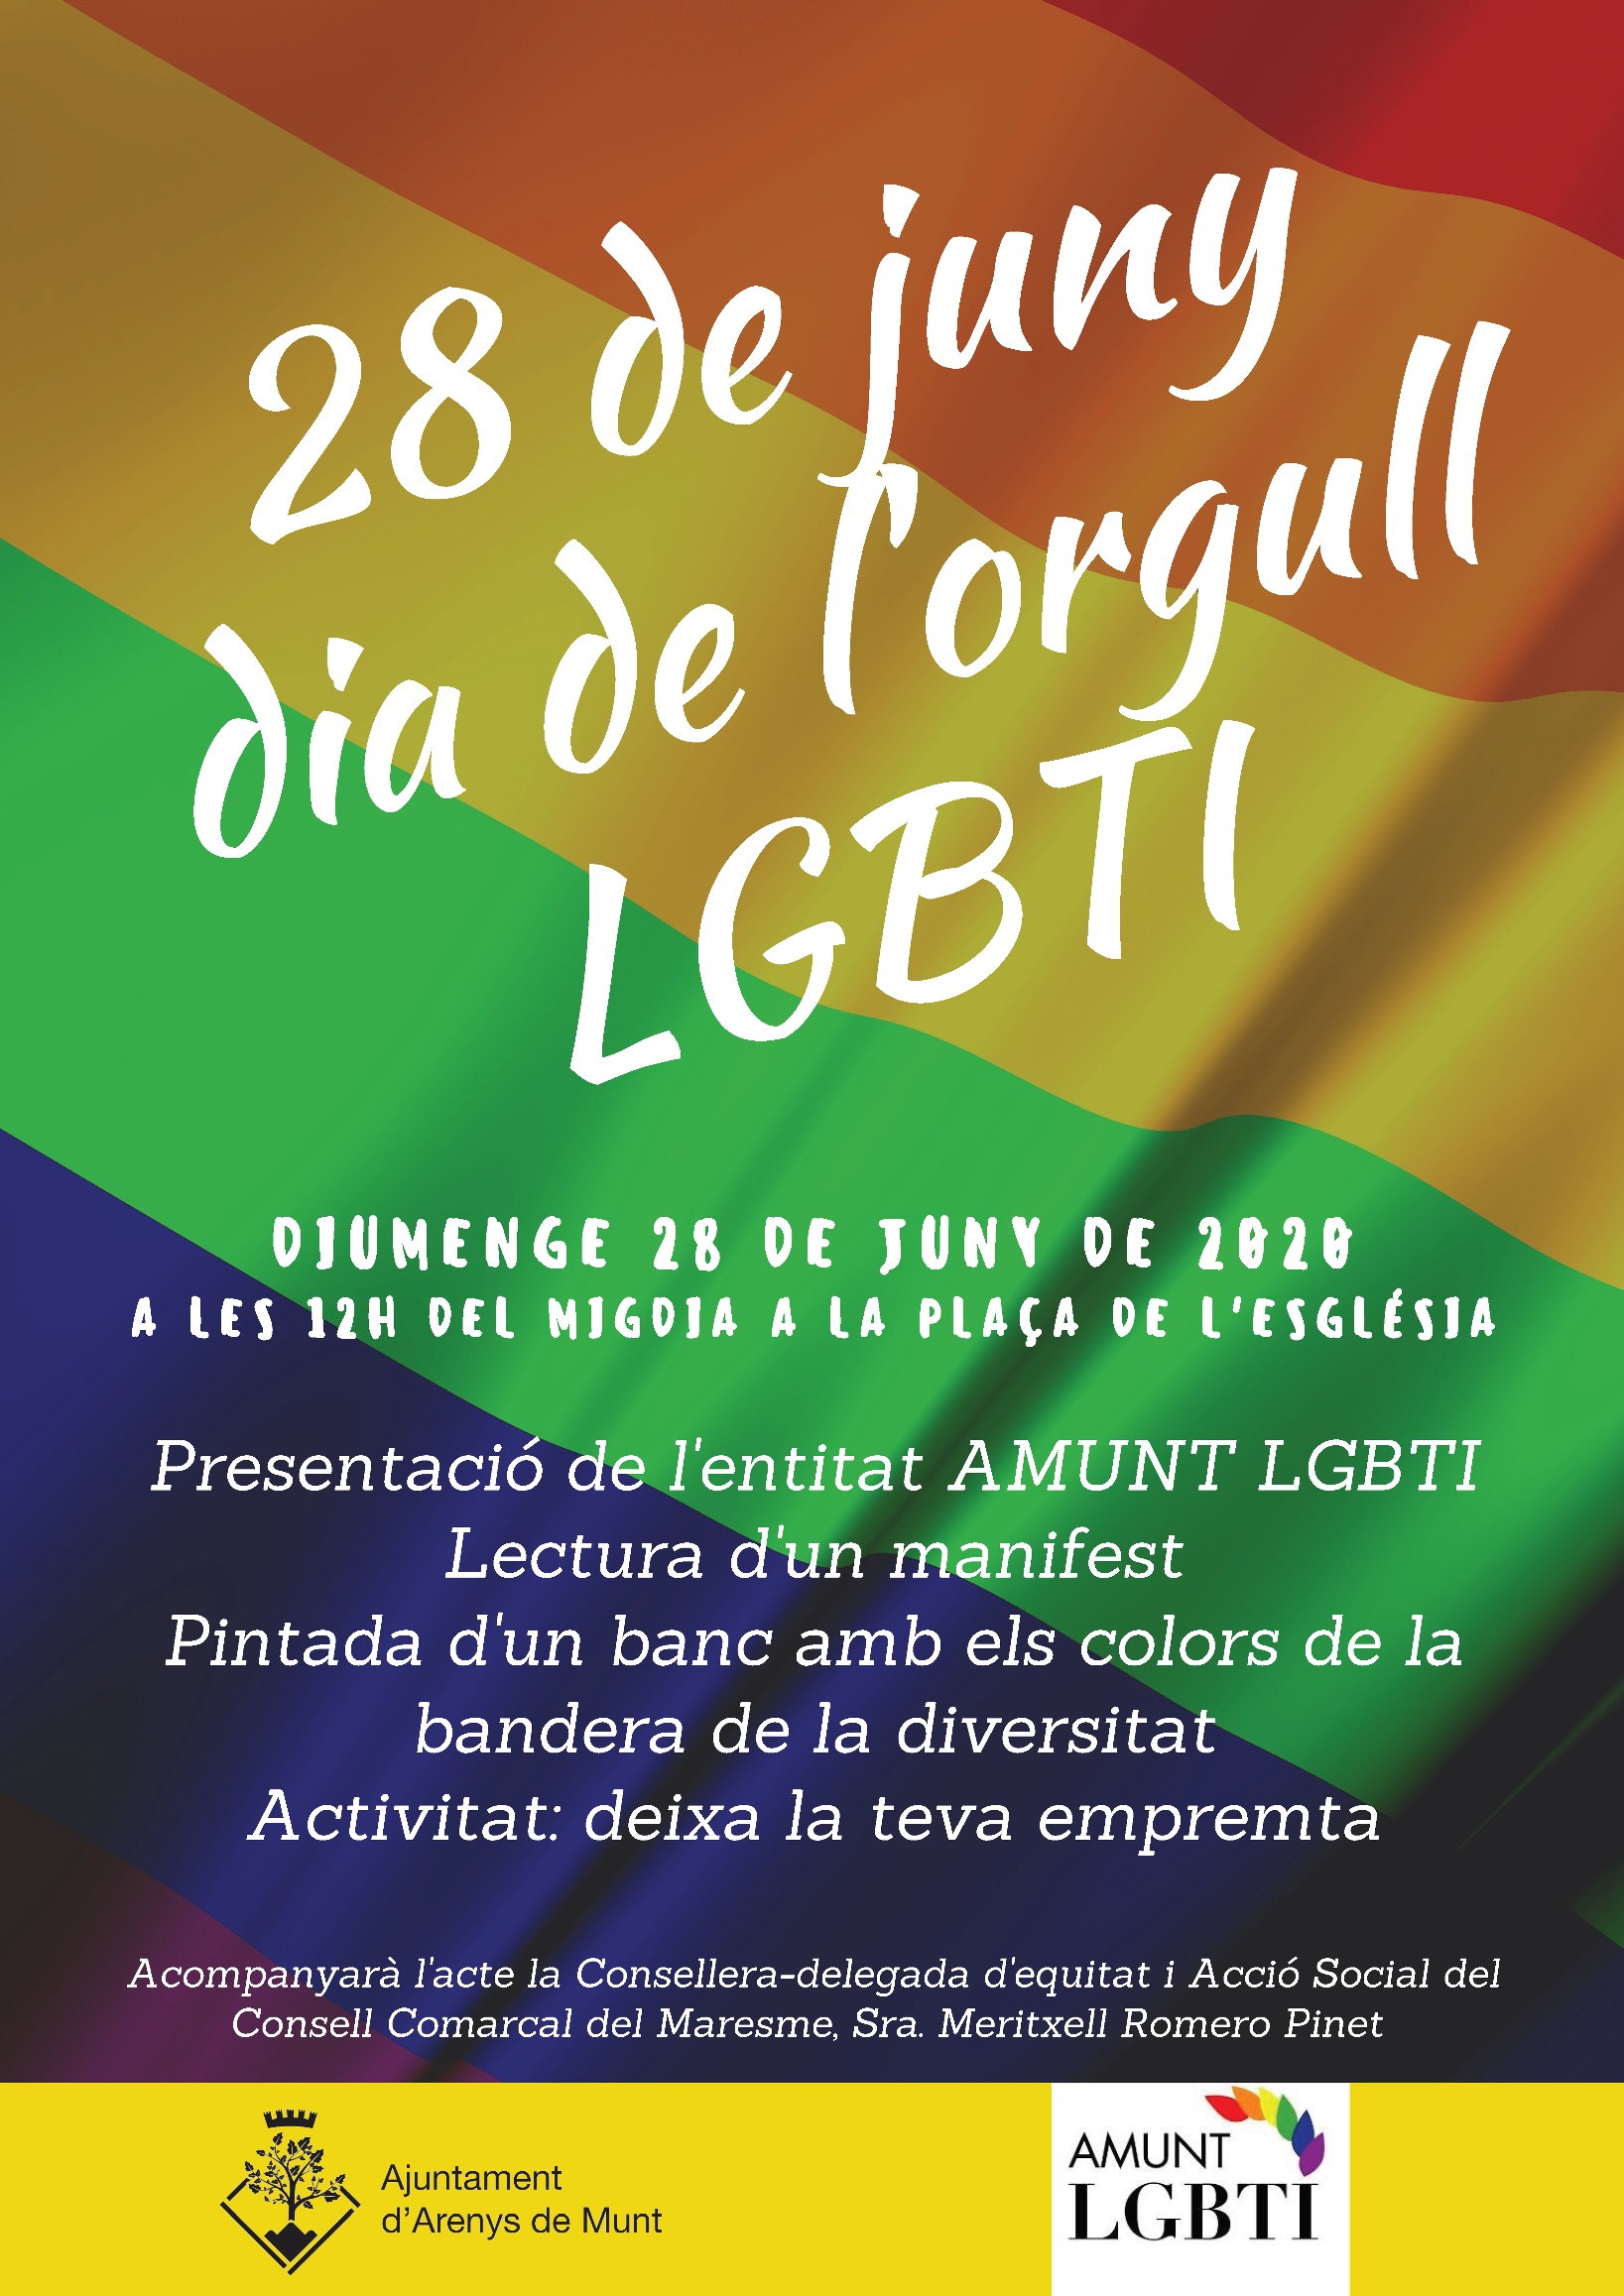 28 de juny, Dia de l'Orgull Lesbià, Gai, Bisexual, Transsexual i Intersexual